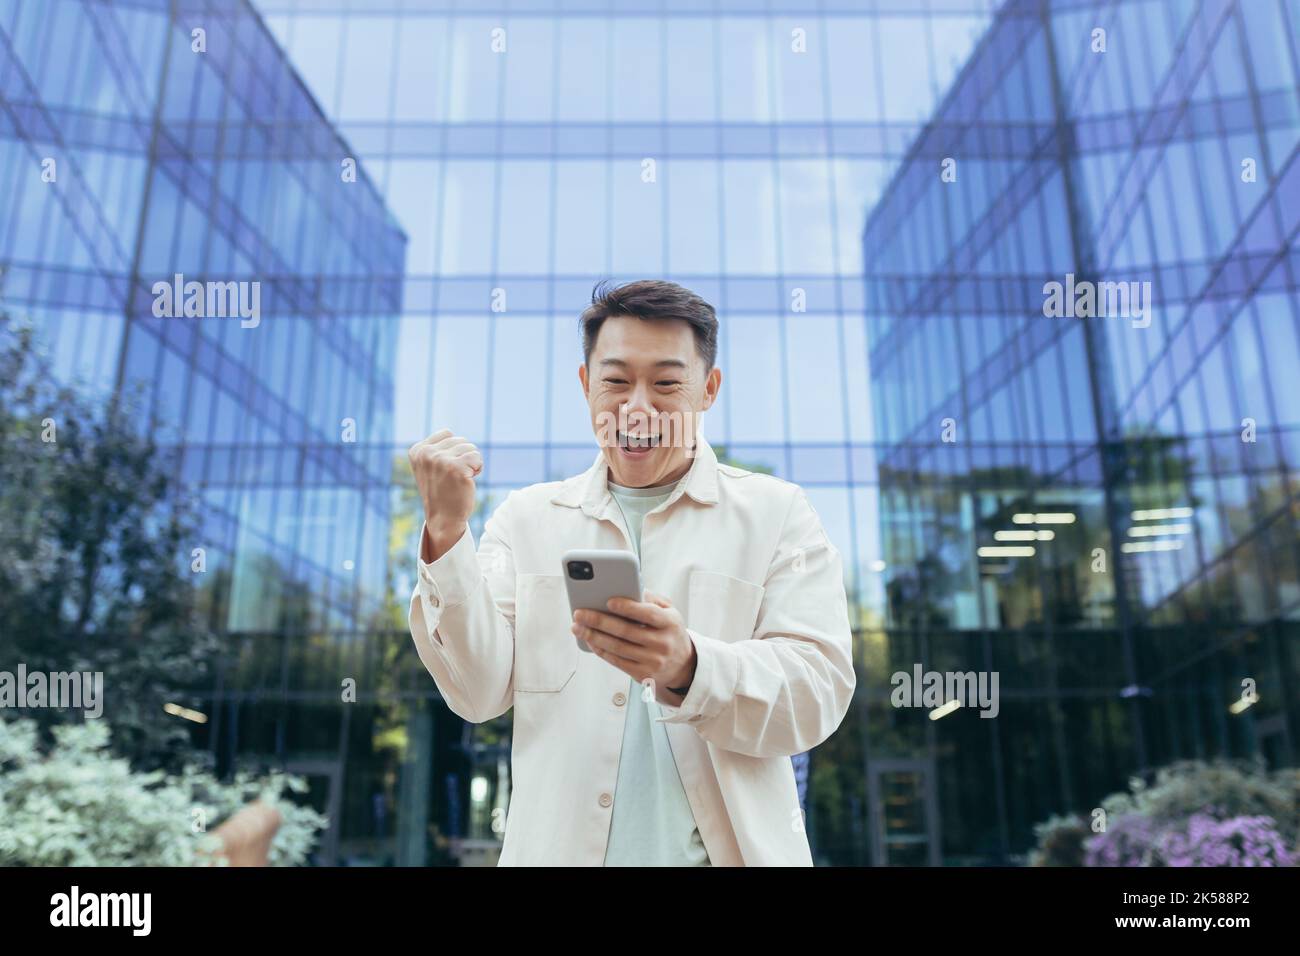 Glücklicher asiatischer Mann, der Sieg und Erfolg feiert, das Telefon lächelnd und glücklich hält, Programmierer außerhalb des modernen Bürogebäude-Softwareunternehmens, Mann in legerer Kleidung mit Smartphone. Stockfoto